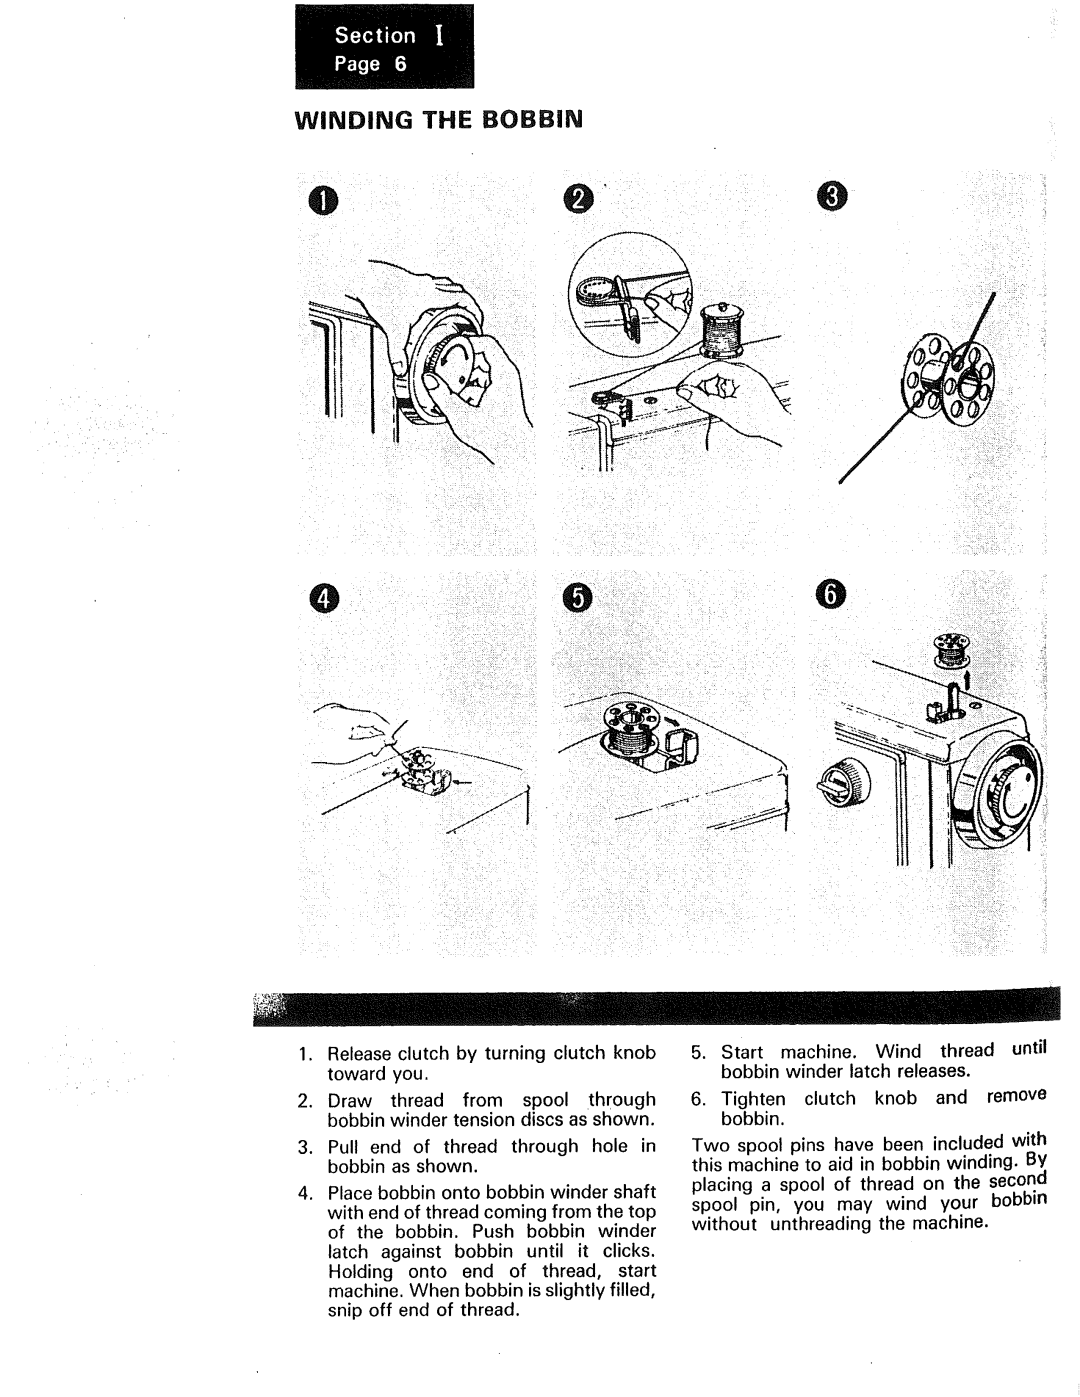 Kenmore 1240, 1230, 1250 manual Winding The Bobbin 